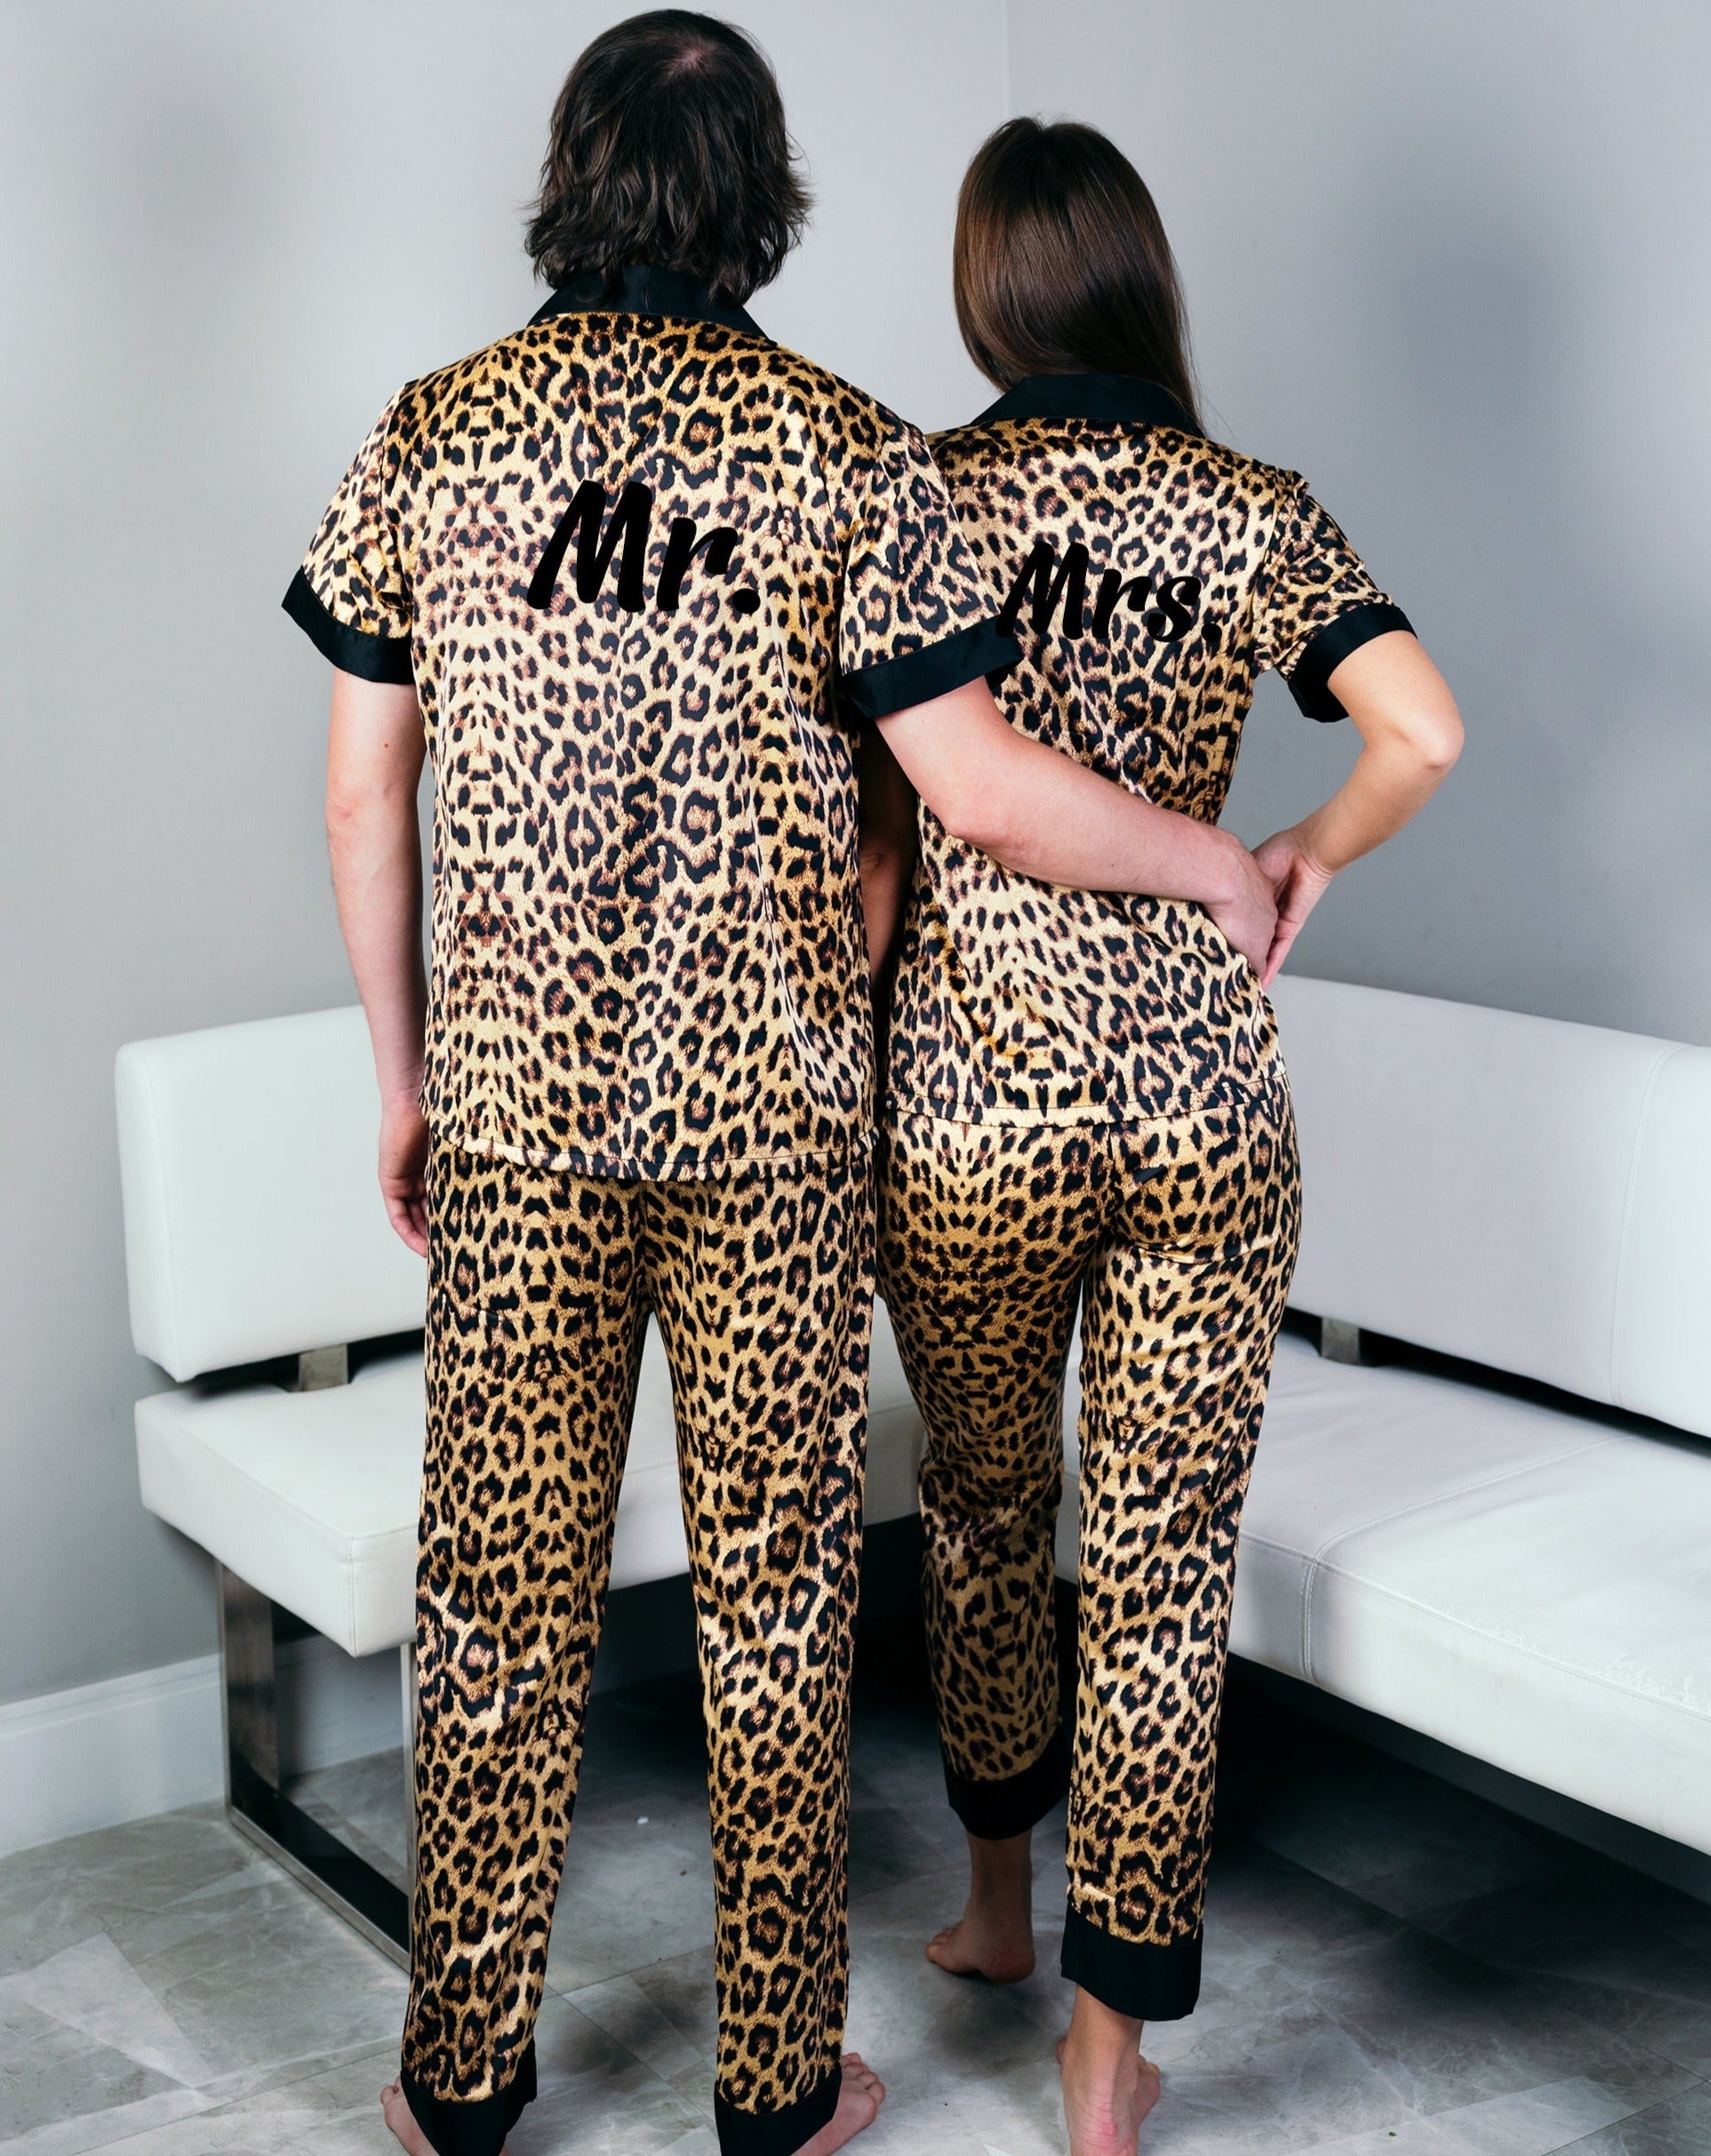 Xmas Miami for – Pajamas Leopard Custom Sunny Boutique Anniversary Gifts Pajamas Wedding Set Pjs, Honeymoon gift Satin Gift, Pajamas Couple,